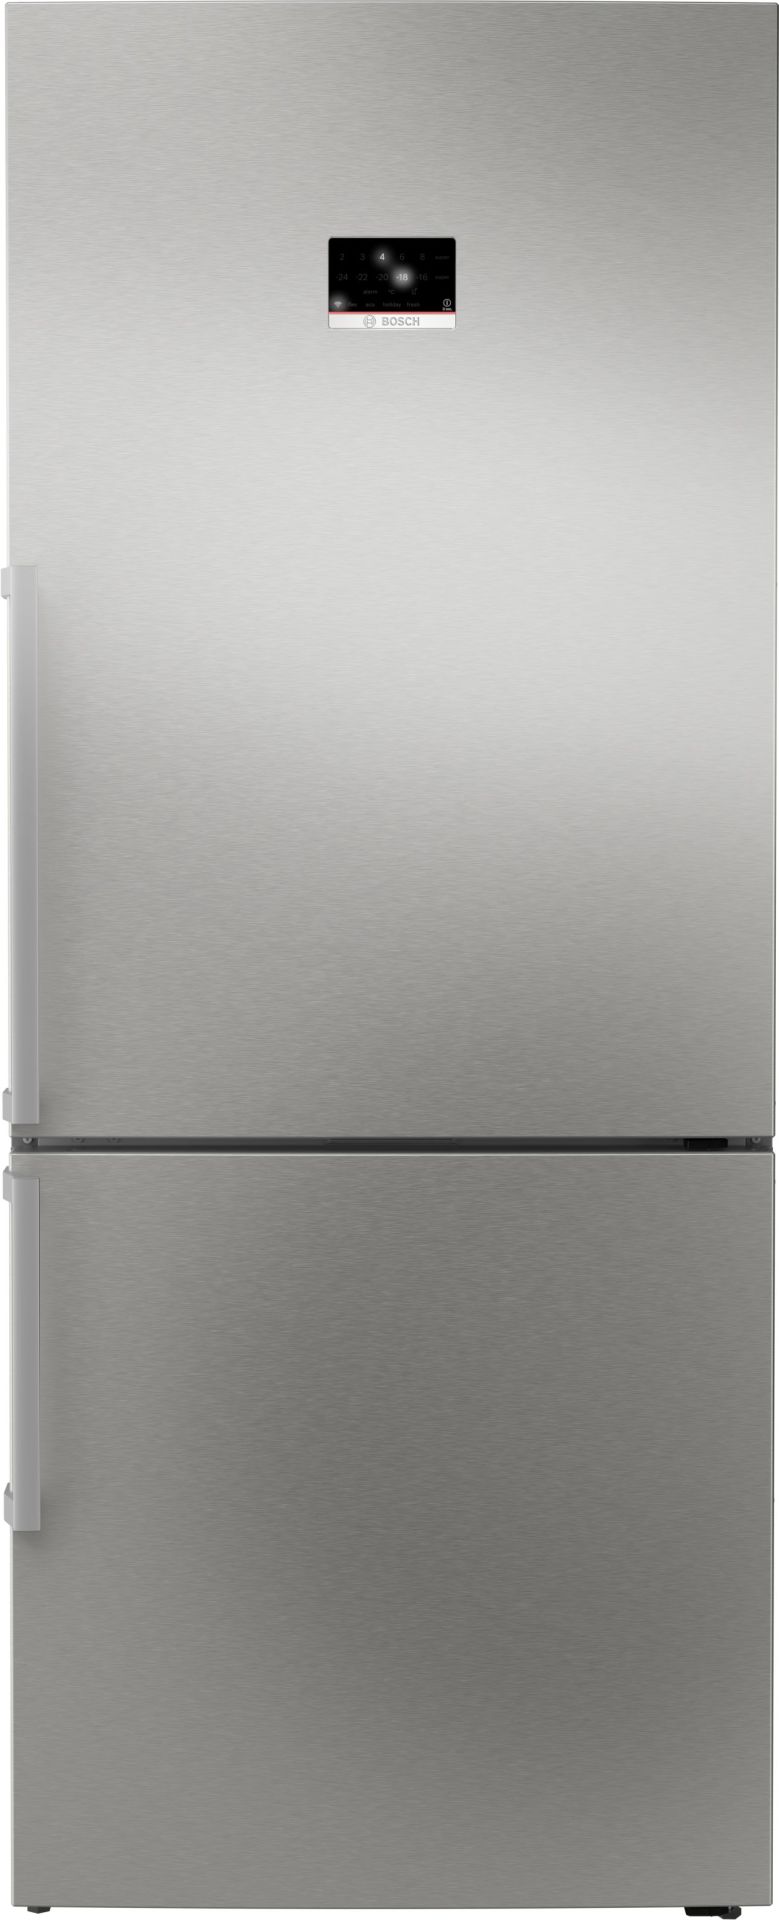 KGP76AIC0N Serie 8 Alttan Donduruculu Buzdolabı 186 x 75 cm Kolay temizlenebilir Inox